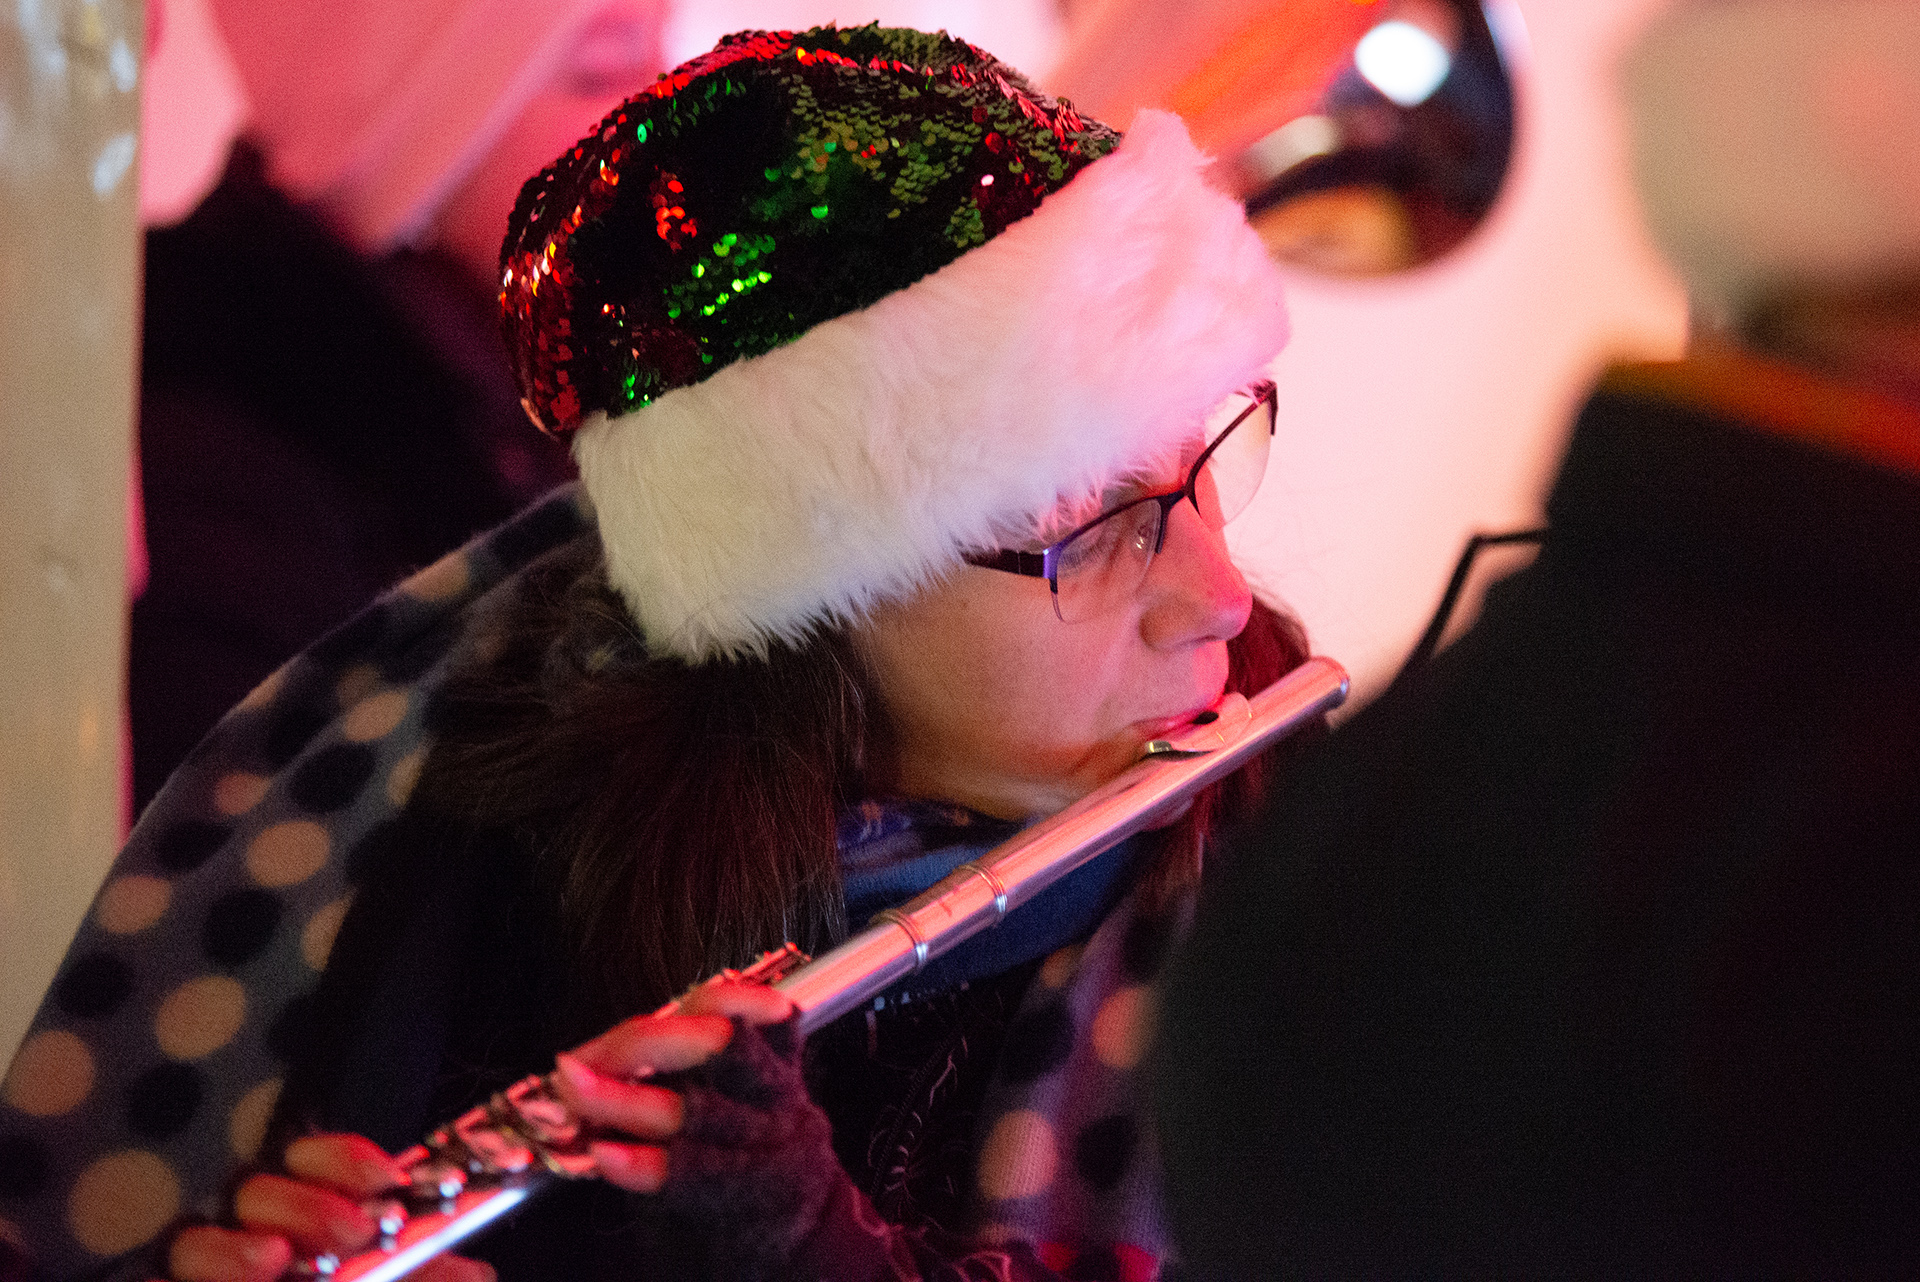 Der Musikzug sorgt beim Nikolausmarkt in Baunatal für weihnachtliche Stimmung (Foto: Lars Reinhard)